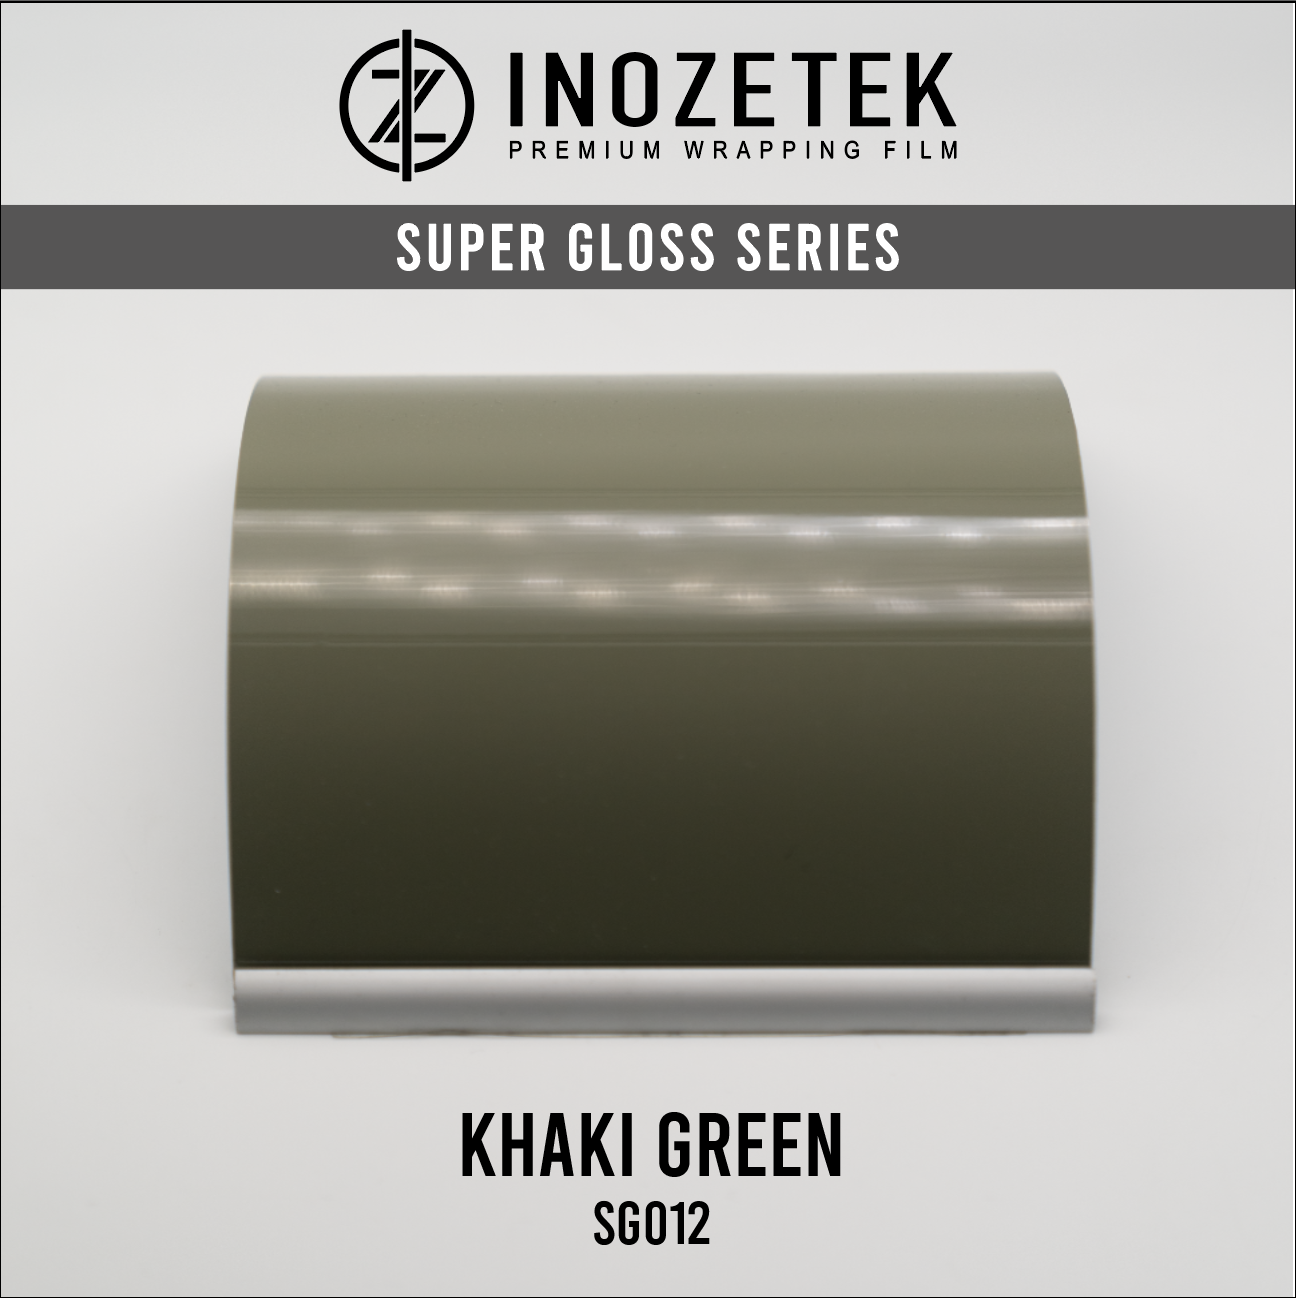 Super Gloss Khaki Green - Inozetek USA